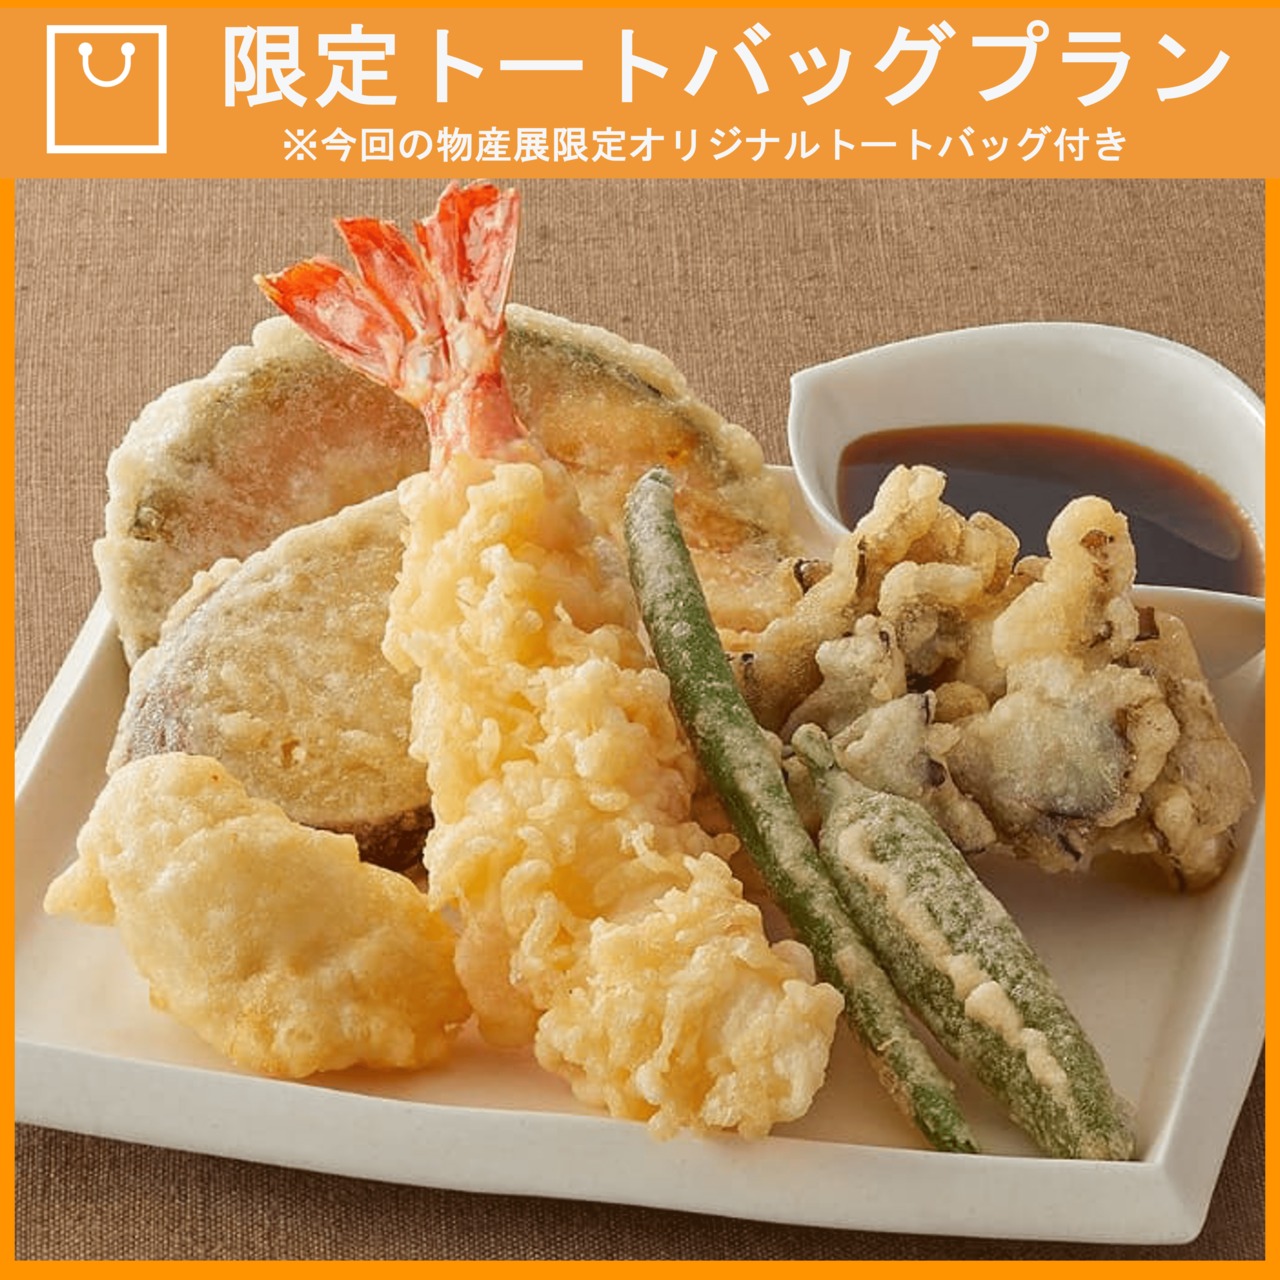 【特典つき】職人仕立て「至高の7種天ぷら」とVTuberさんオススメスープのセット